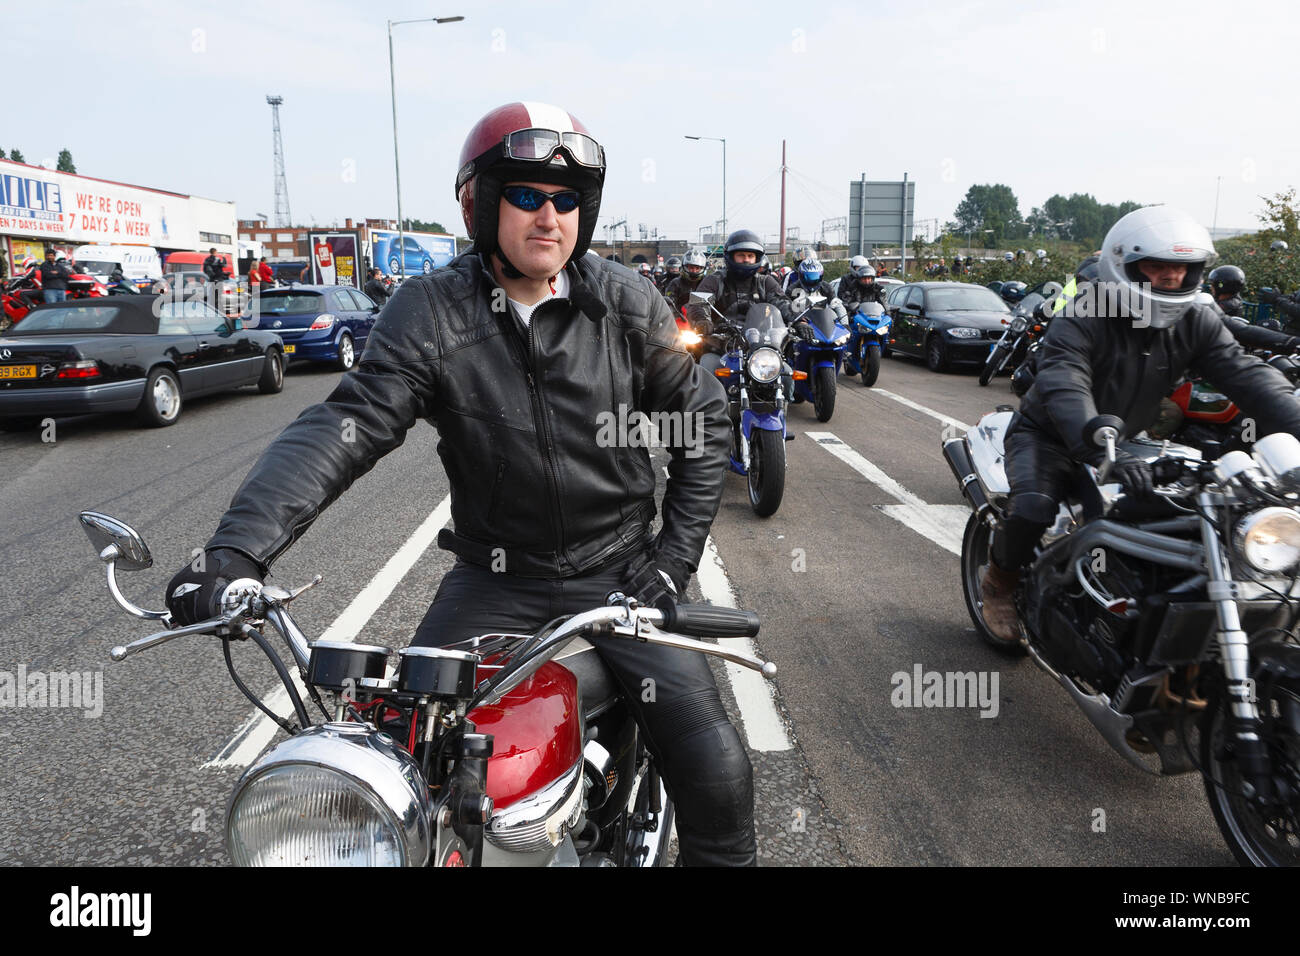 TON UP ROCKER MOTORCYCLE MOTORBIKE MOTO BIKER CAFE RACER LONDON LADIES T SHIRT